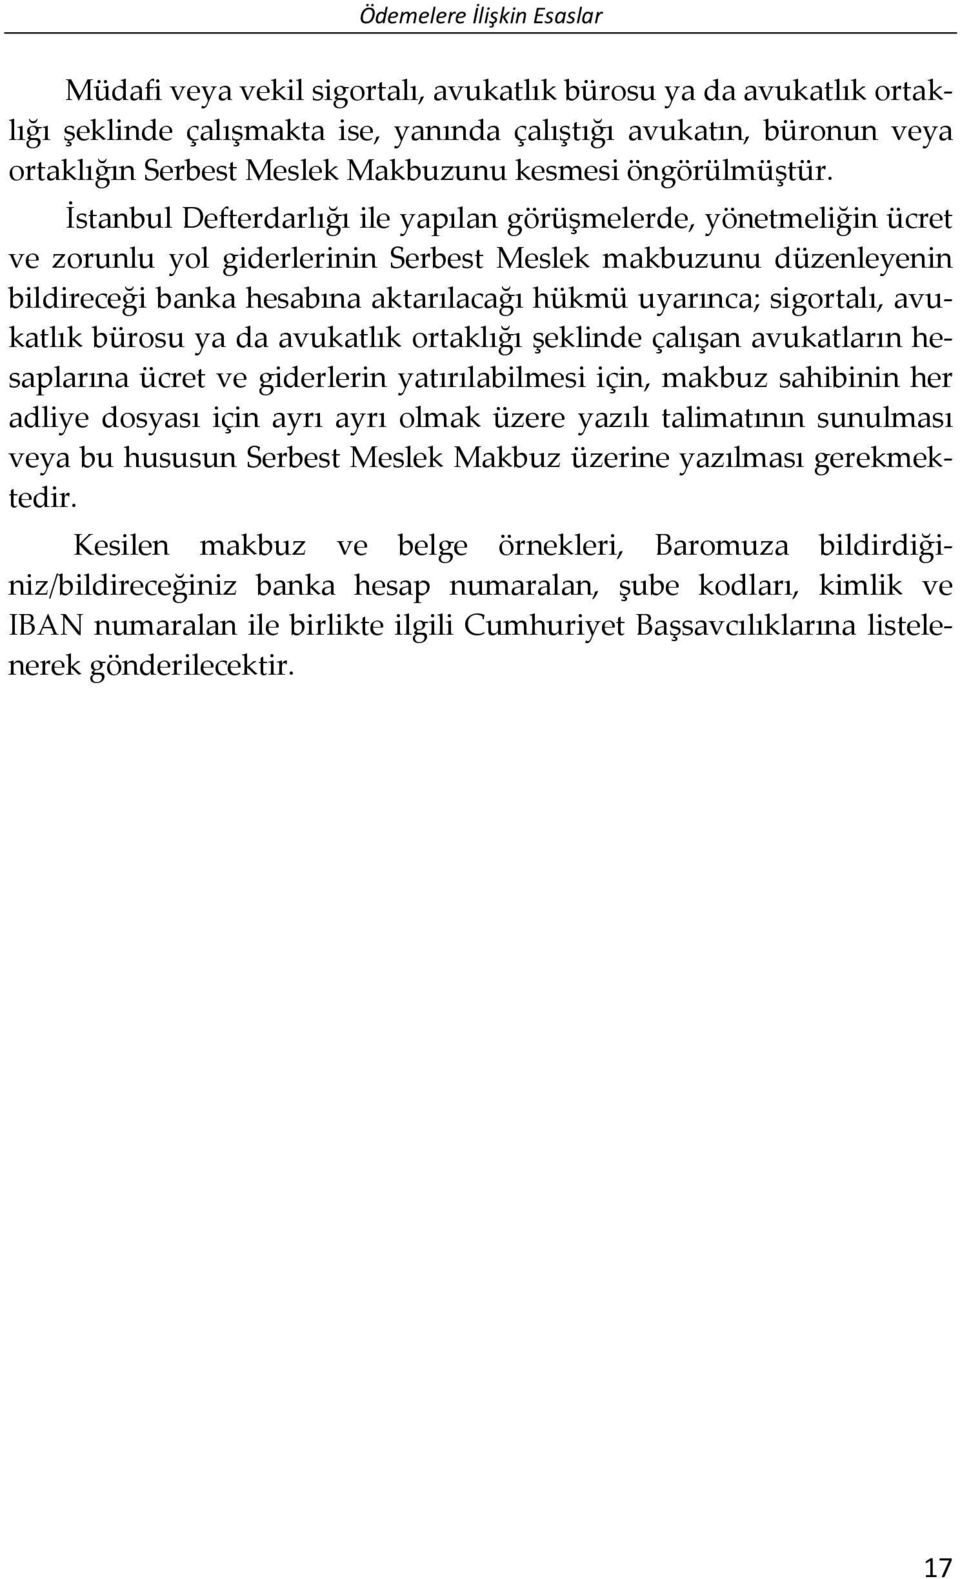 İstanbul Defterdarlığı ile yapılan görüşmelerde, yönetmeliğin ücret ve zorunlu yol giderlerinin Serbest Meslek makbuzunu düzenleyenin bildireceği banka hesabına aktarılacağı hükmü uyarınca;